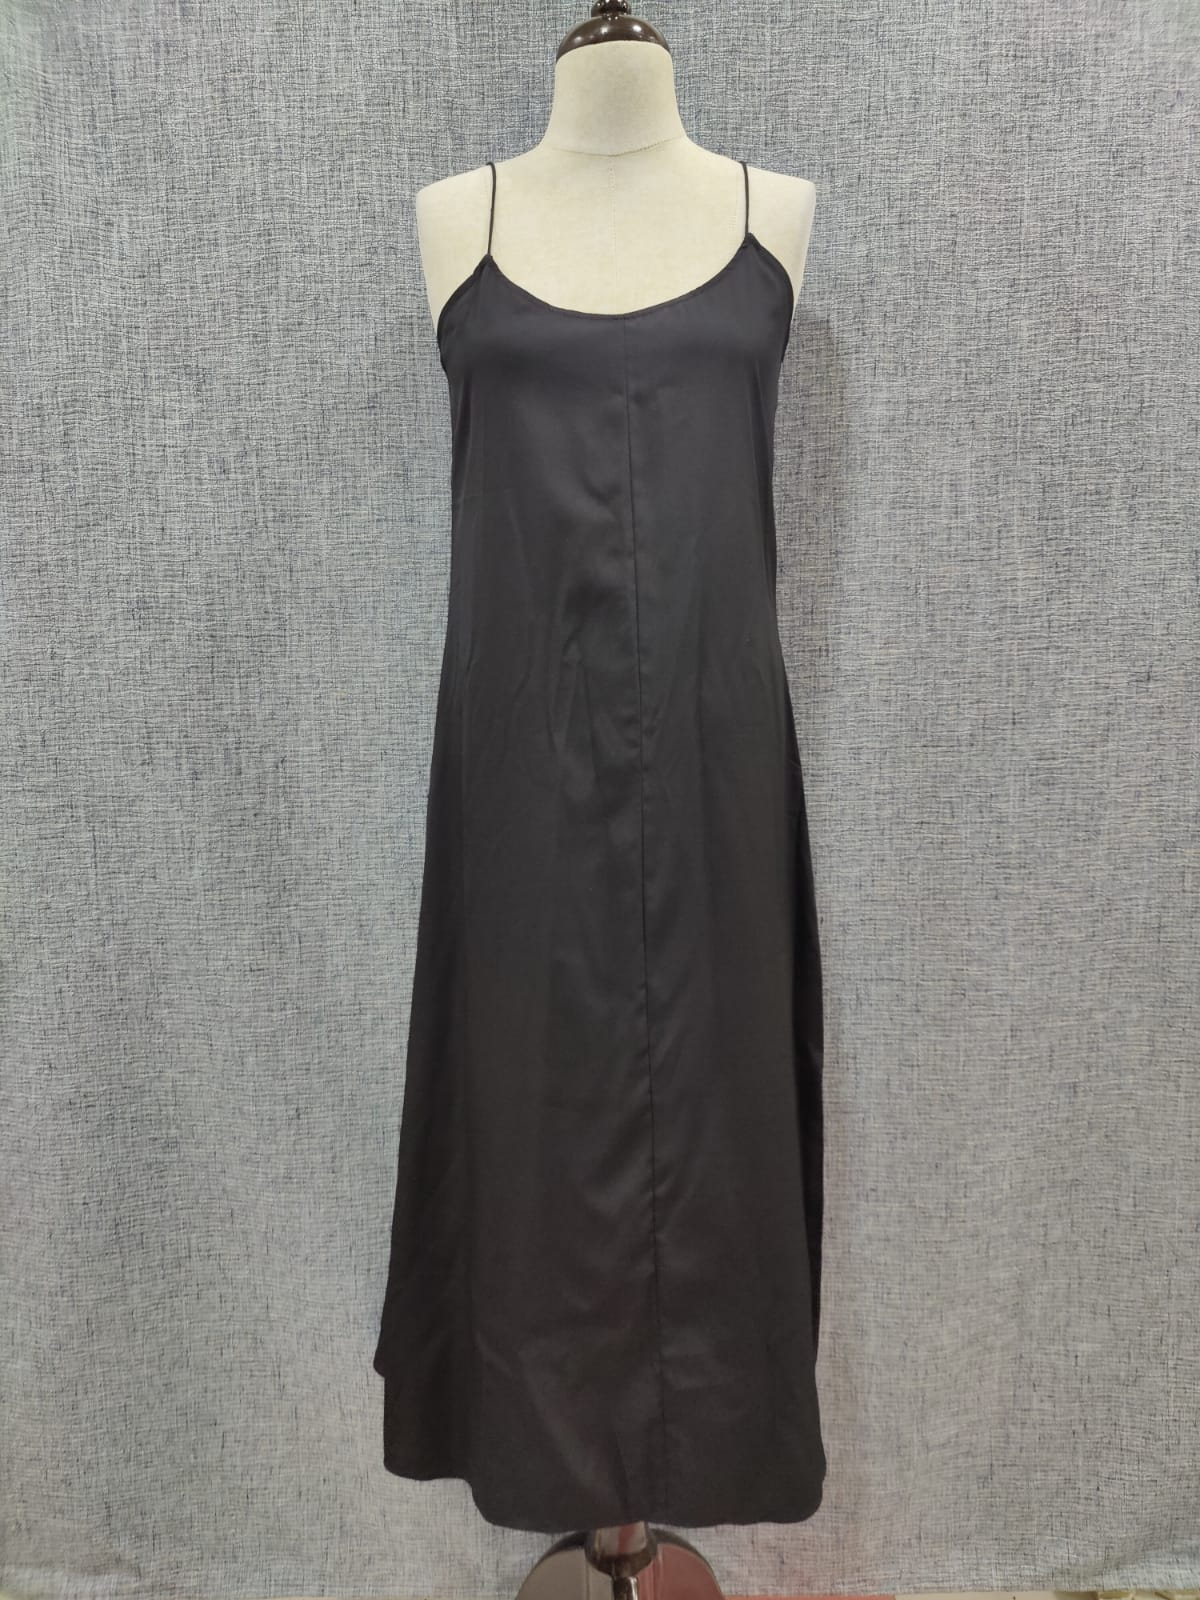 ZARA Black Sheer Lace Dress With Slip | Relove